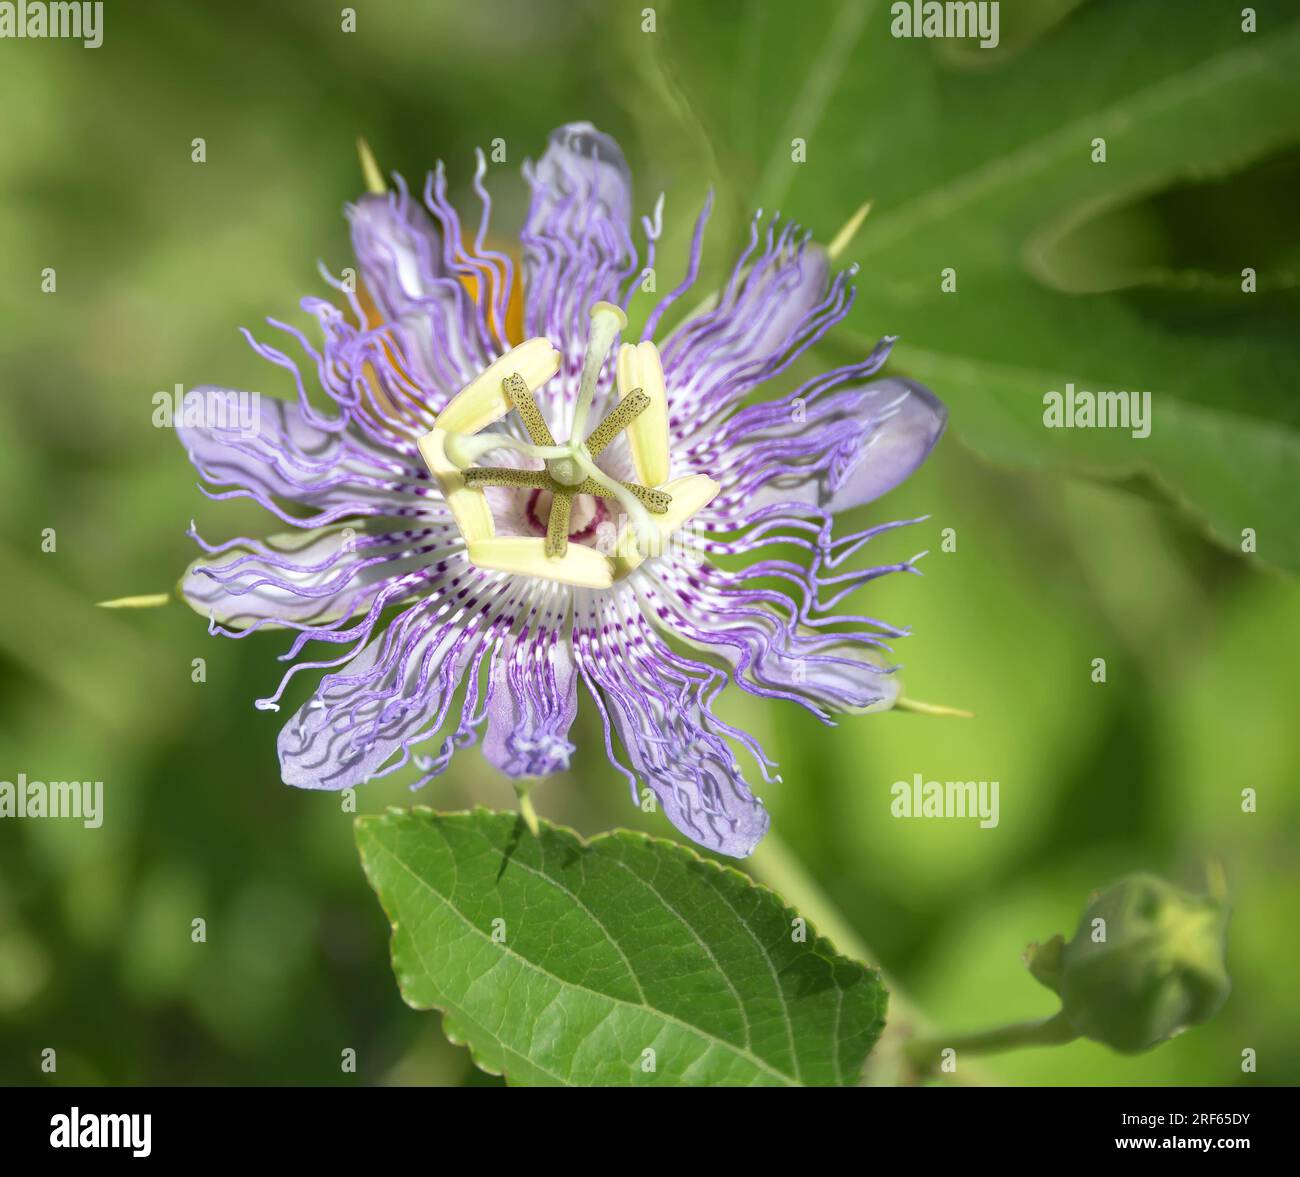 Belle fleur de passion violette ou passion Vine (Passiflora incarnata) fleurissant dans le jardin d'été. Gros plan. Banque D'Images